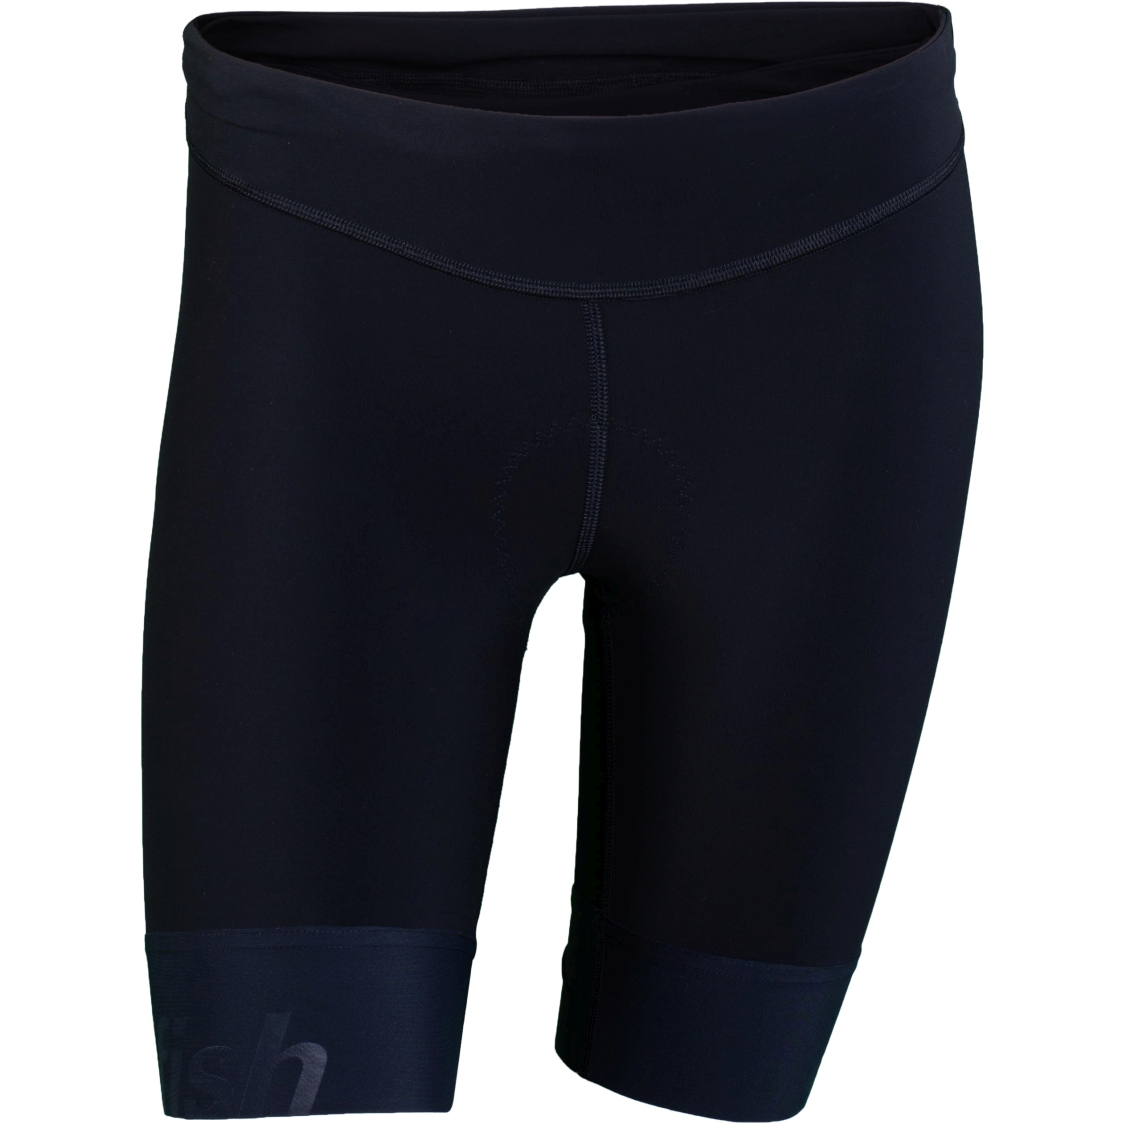 Produktbild von sailfish Damen Perform Triathlon Shorts - schwarz